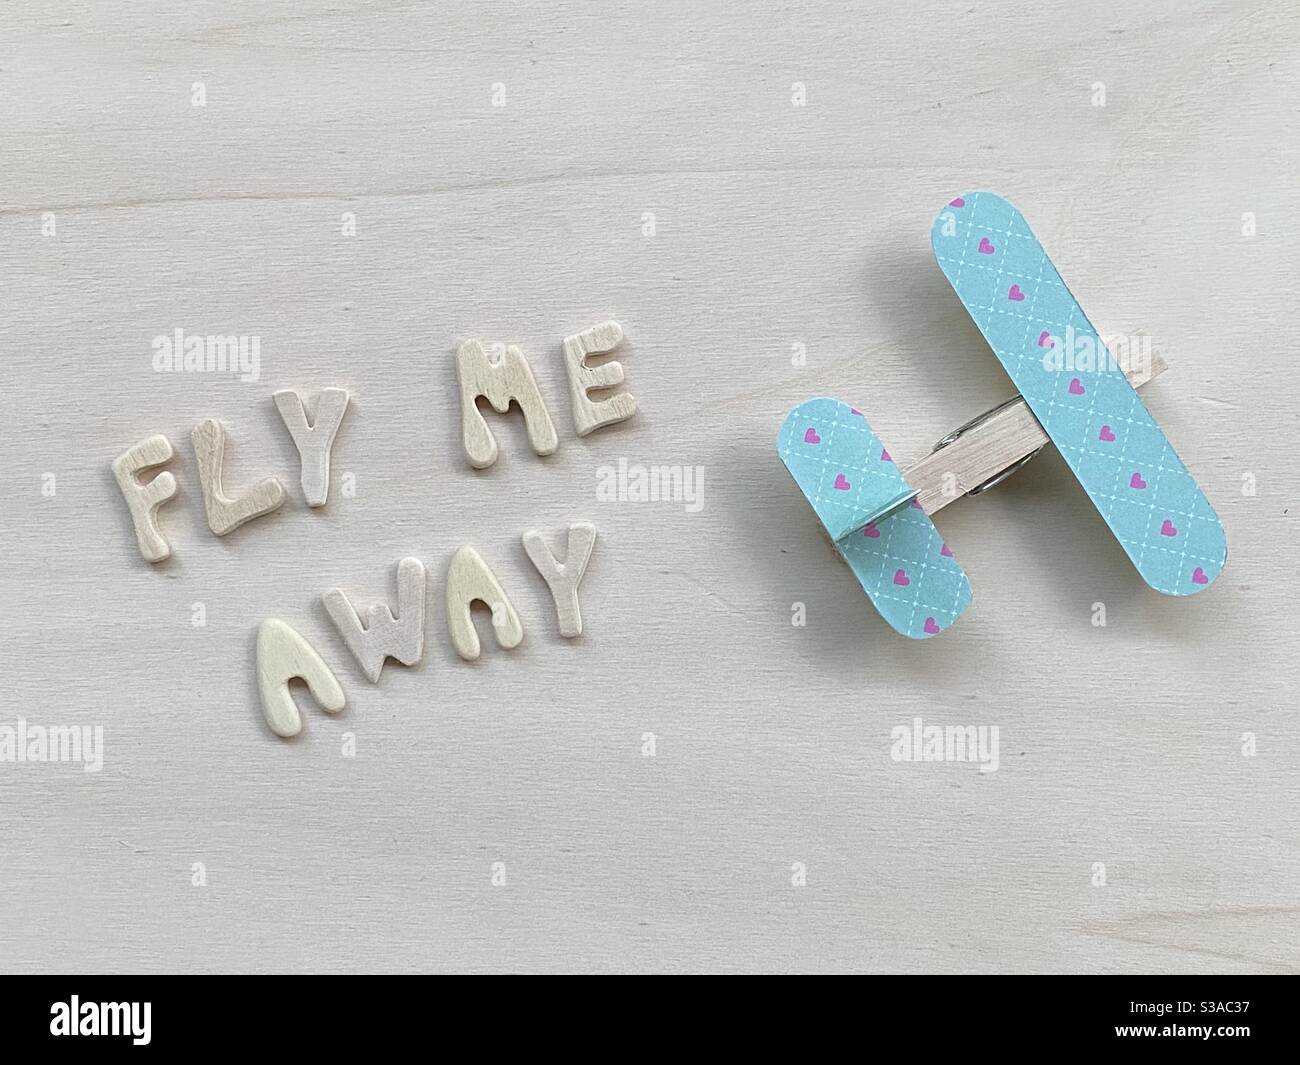 Fly me away, kreativer Text mit Holzbuchstaben und einer hölzernen Wäscheklammer Flugzeug komponiert Stockfoto